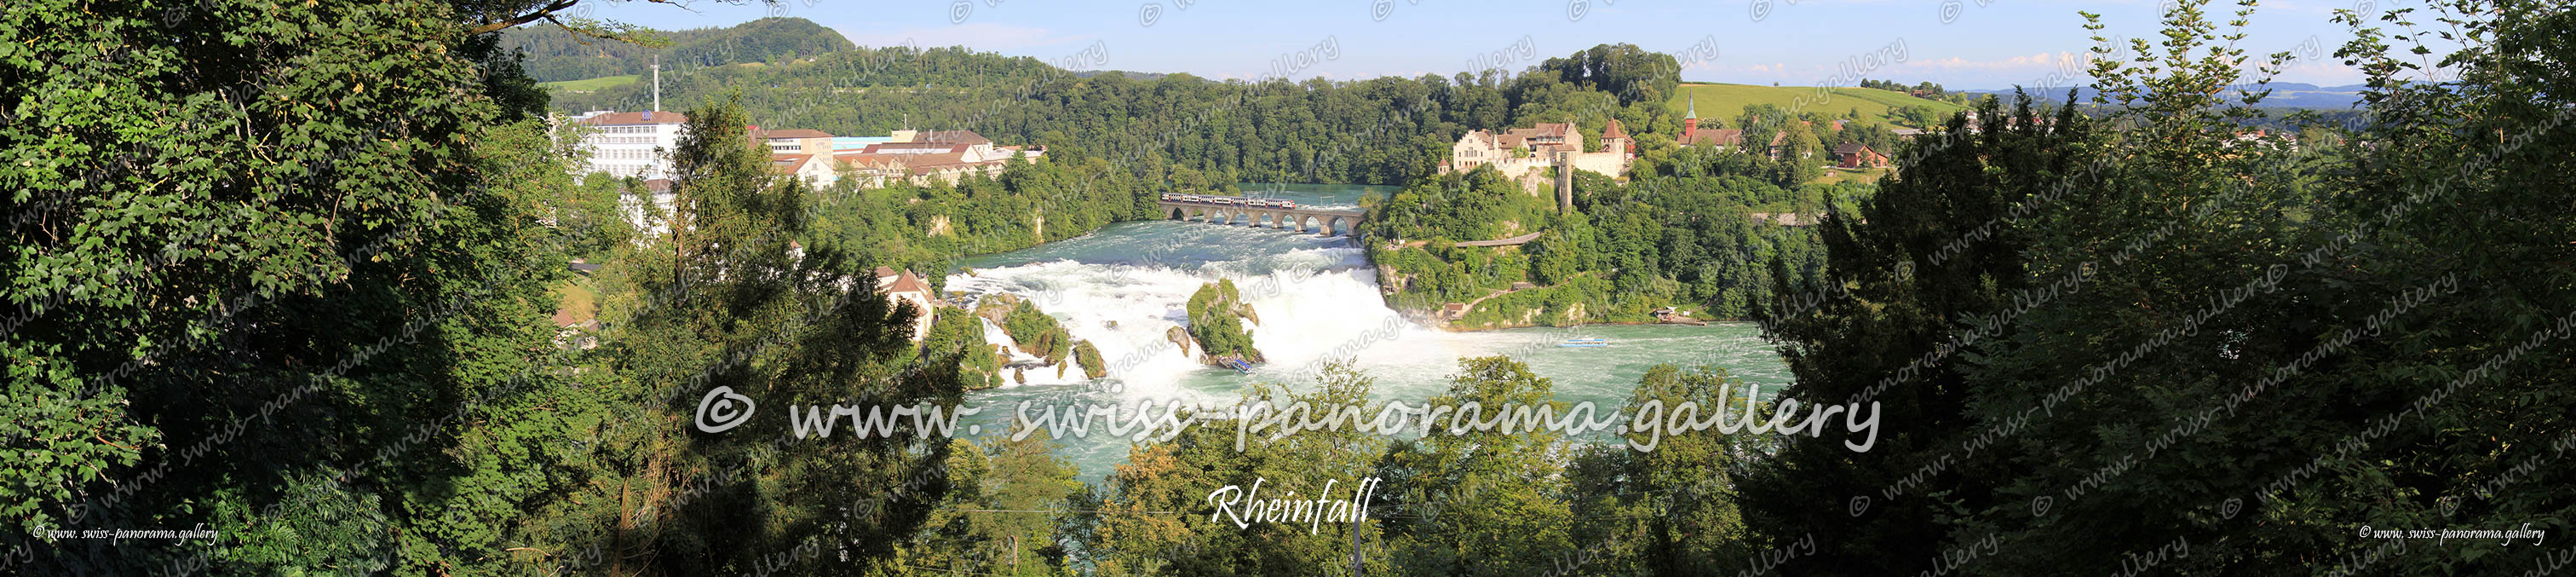 Swiss Panorama Rheinfall